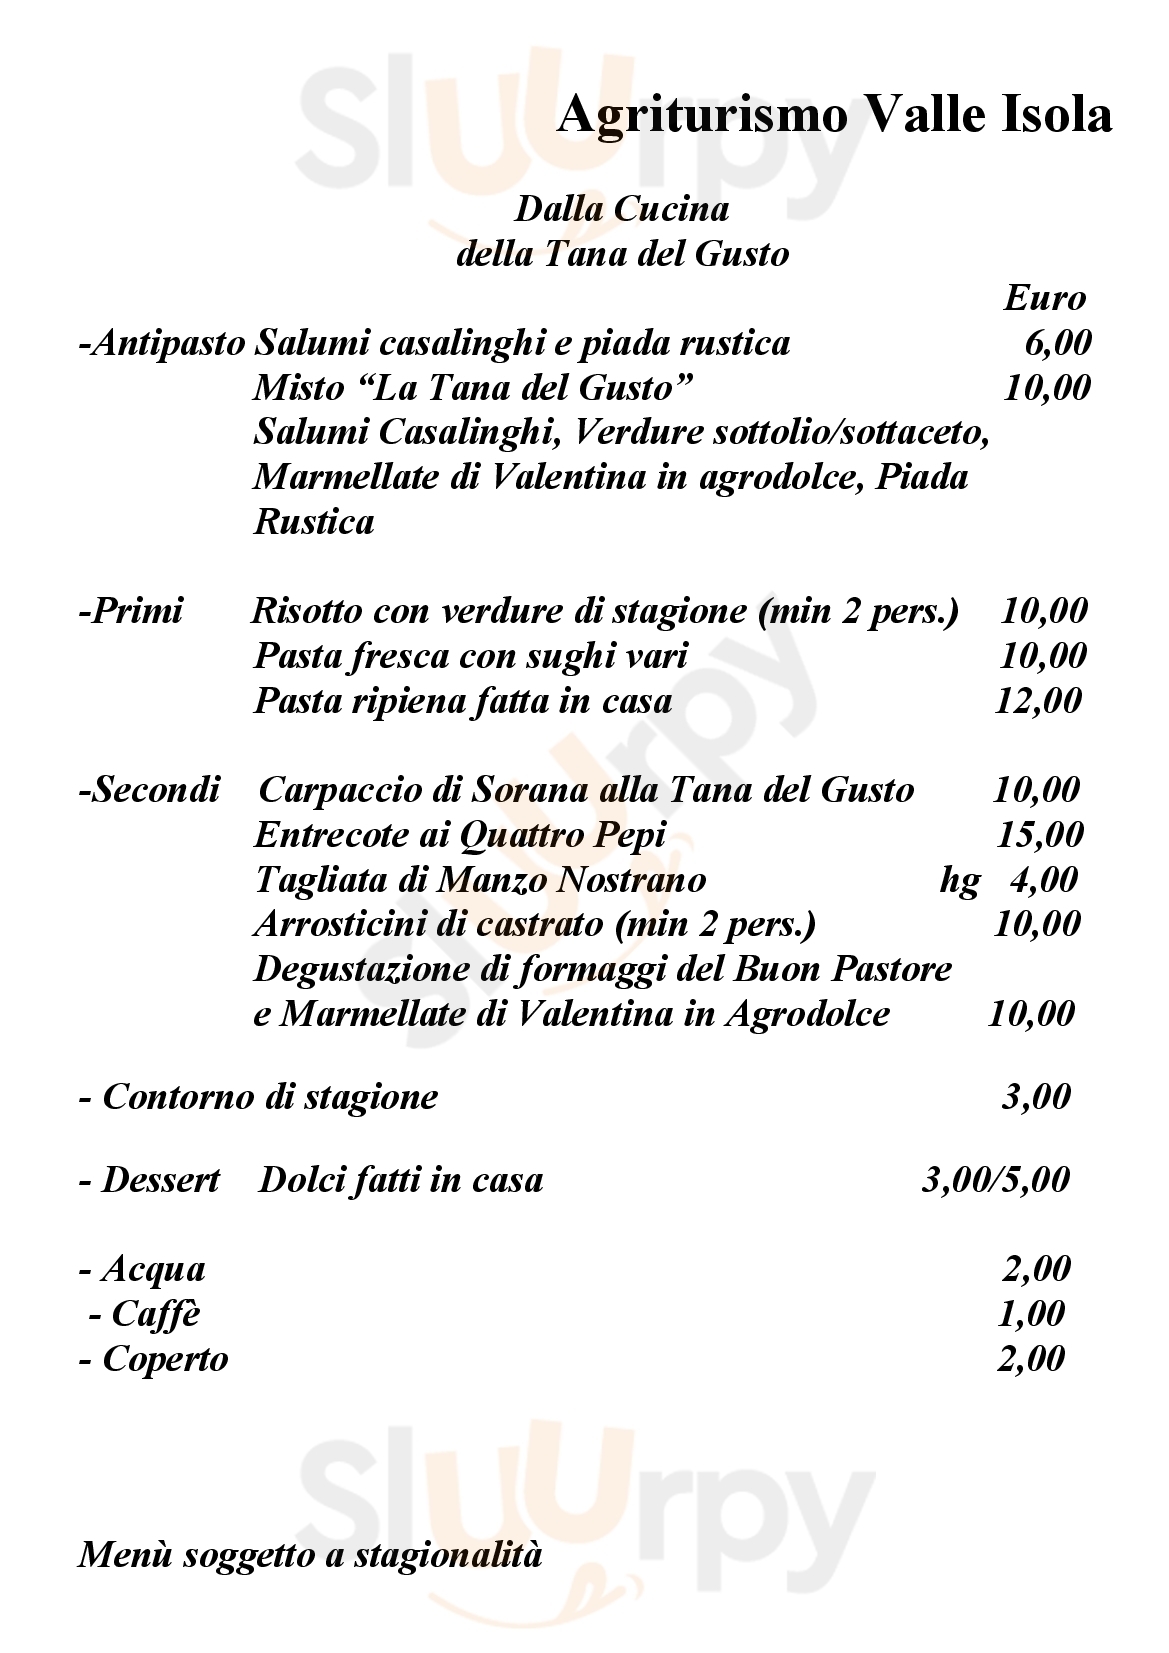 Agriturismo Valle Isola La Tana del Gusto Comacchio menù 1 pagina